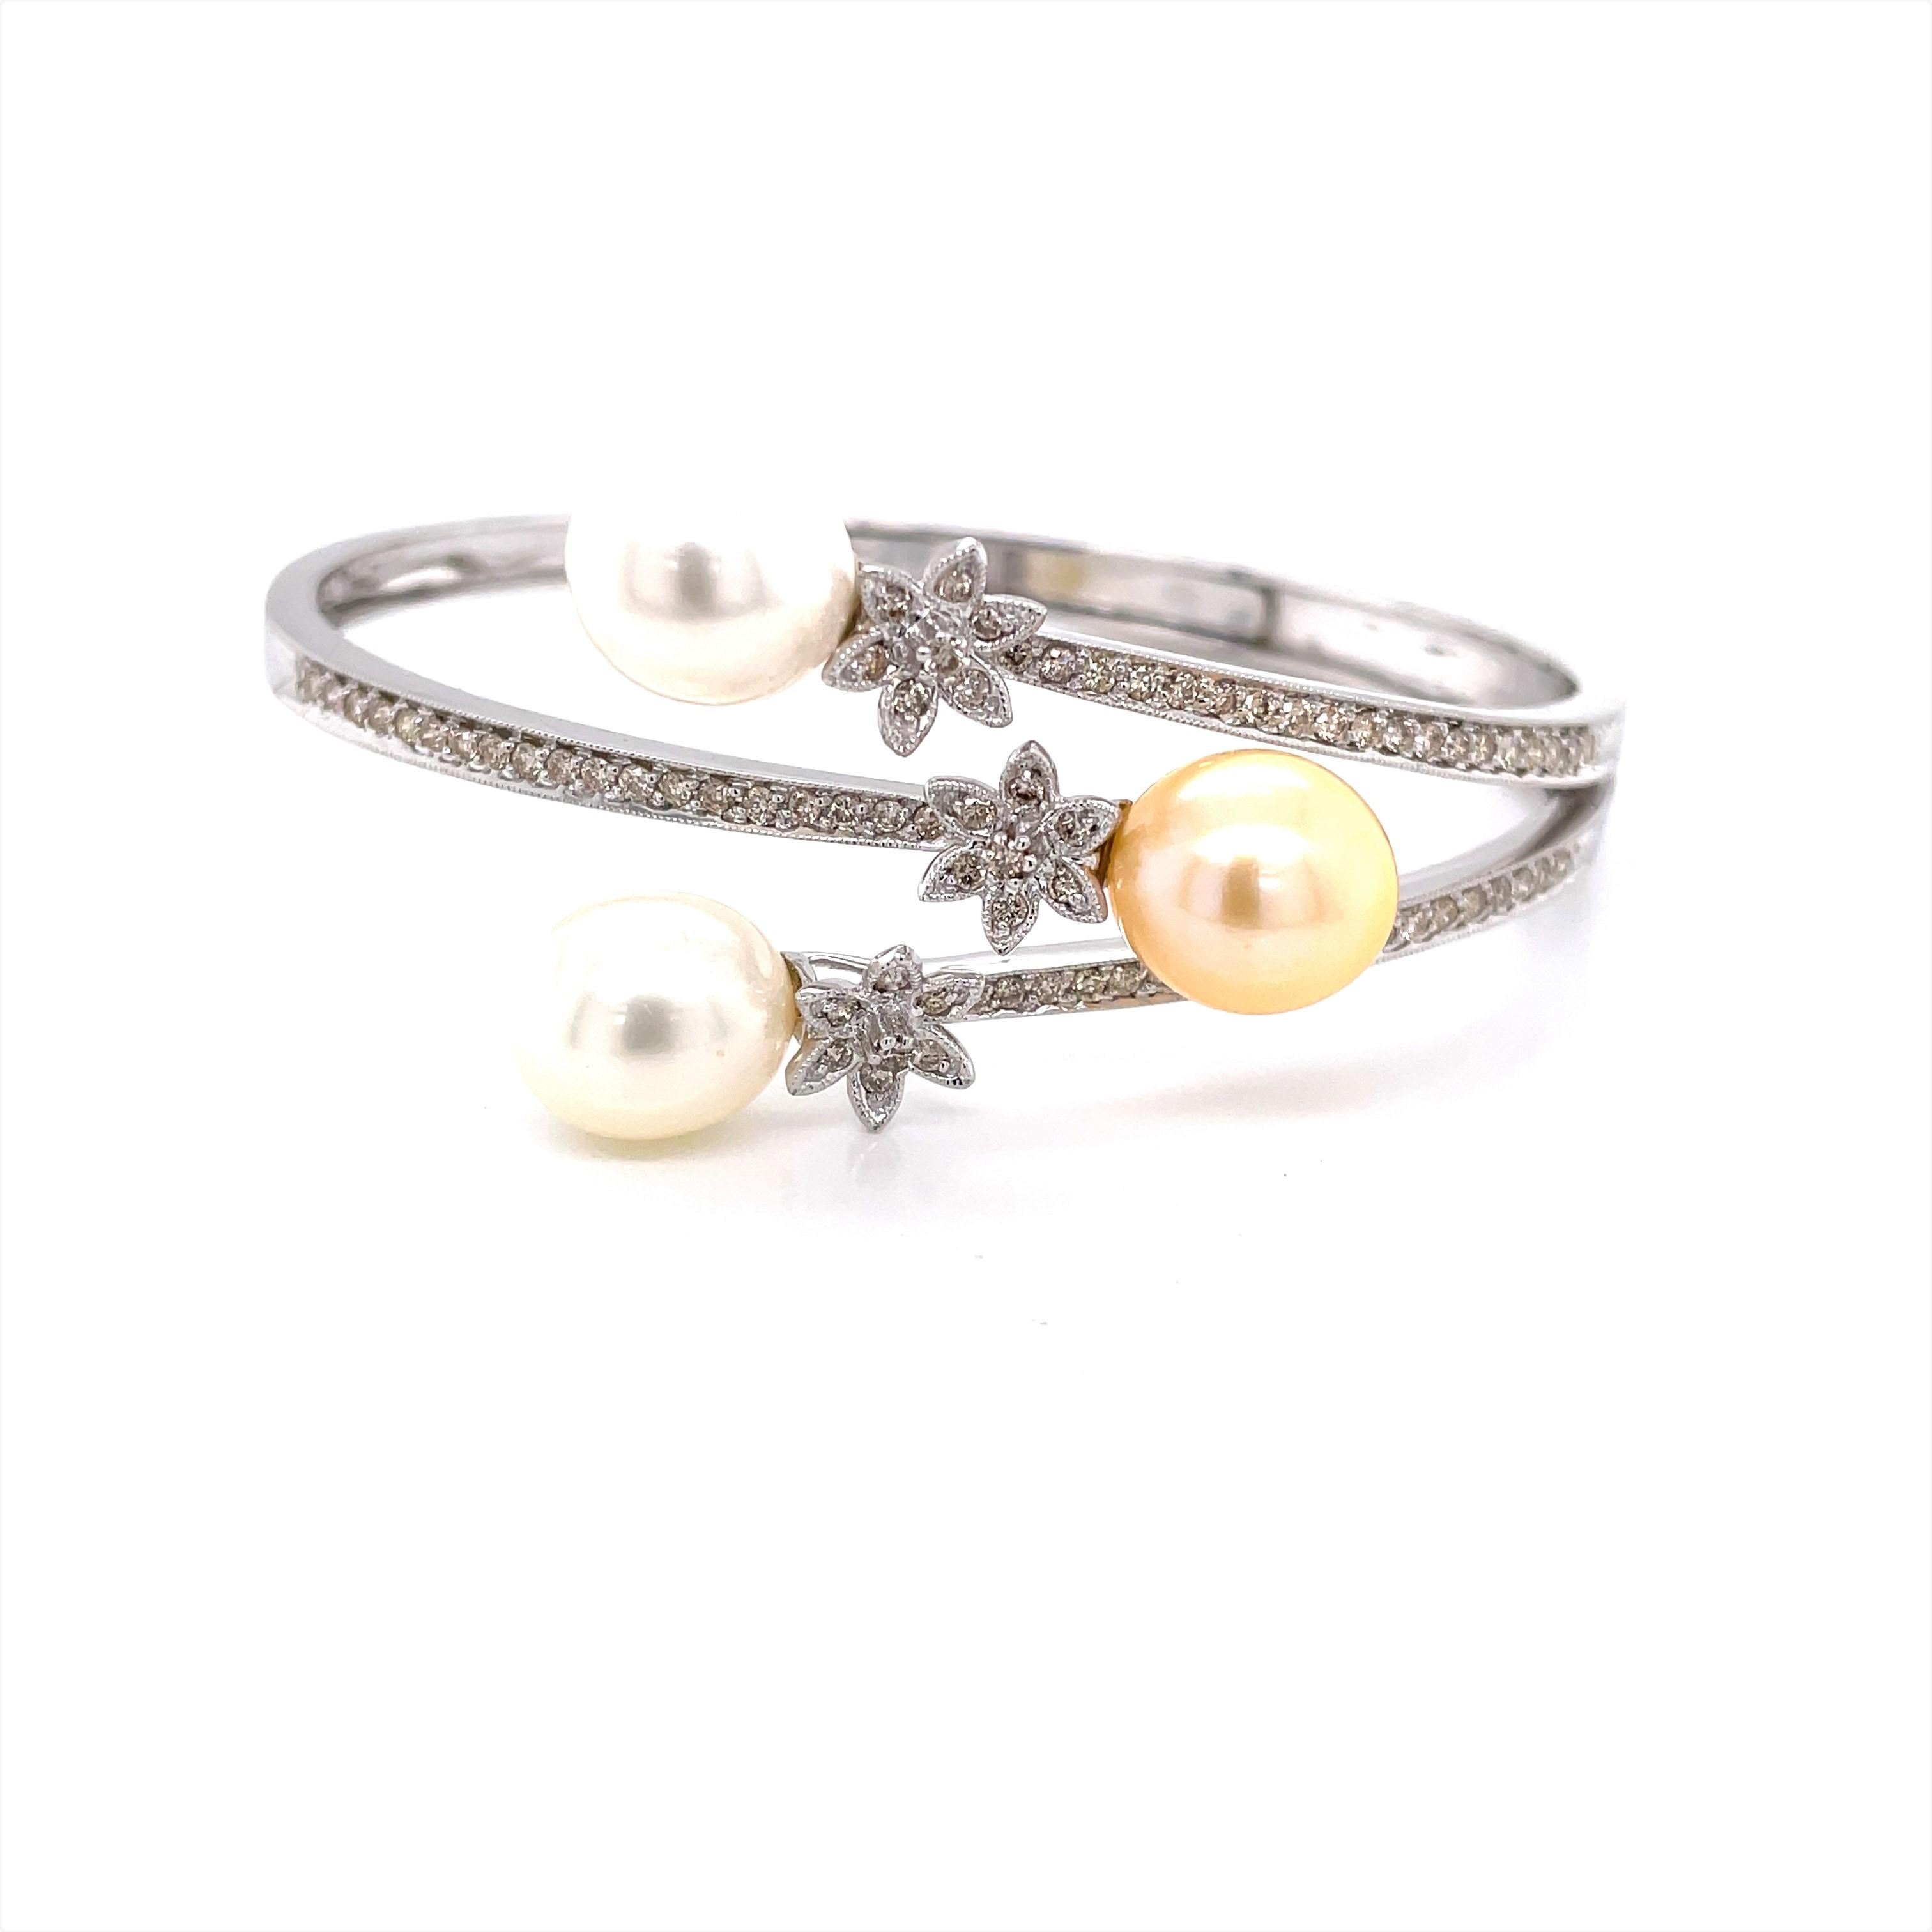 Un bracelet habillé, parfait pour les mariées ou les occasions spéciales. Trois perles de culture Akoya AAA de 9,7 mm en forme de goutte d'eau, deux blanches et une champagne, sont mises en valeur sur le design enveloppant à trois branches de ce